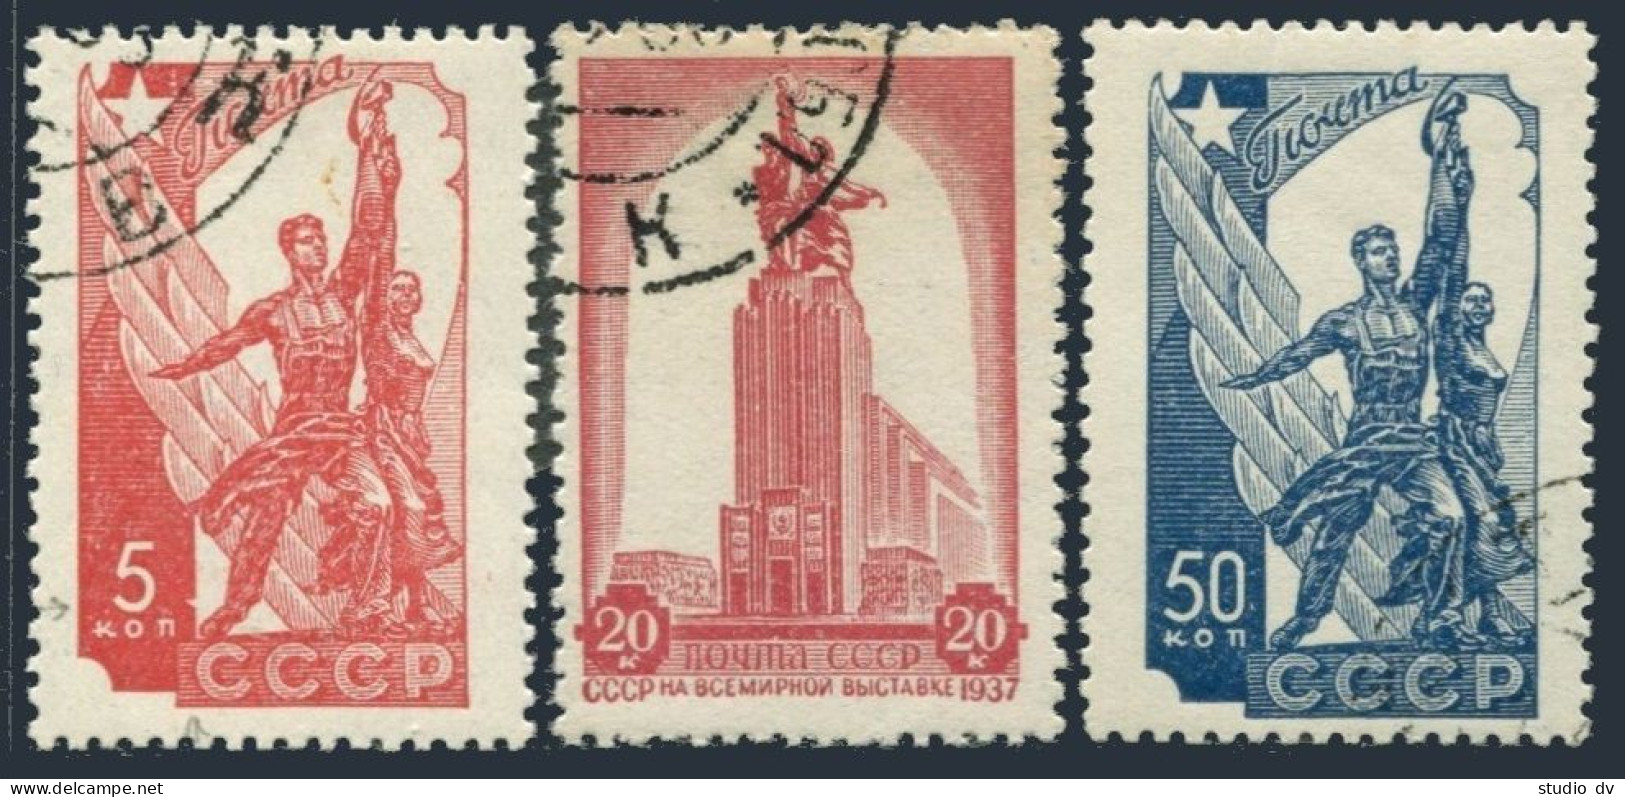 Russia 611-613,CTO.Michel 581-583. EXPO Paris-1937.Monument,by Mukhina. - Oblitérés